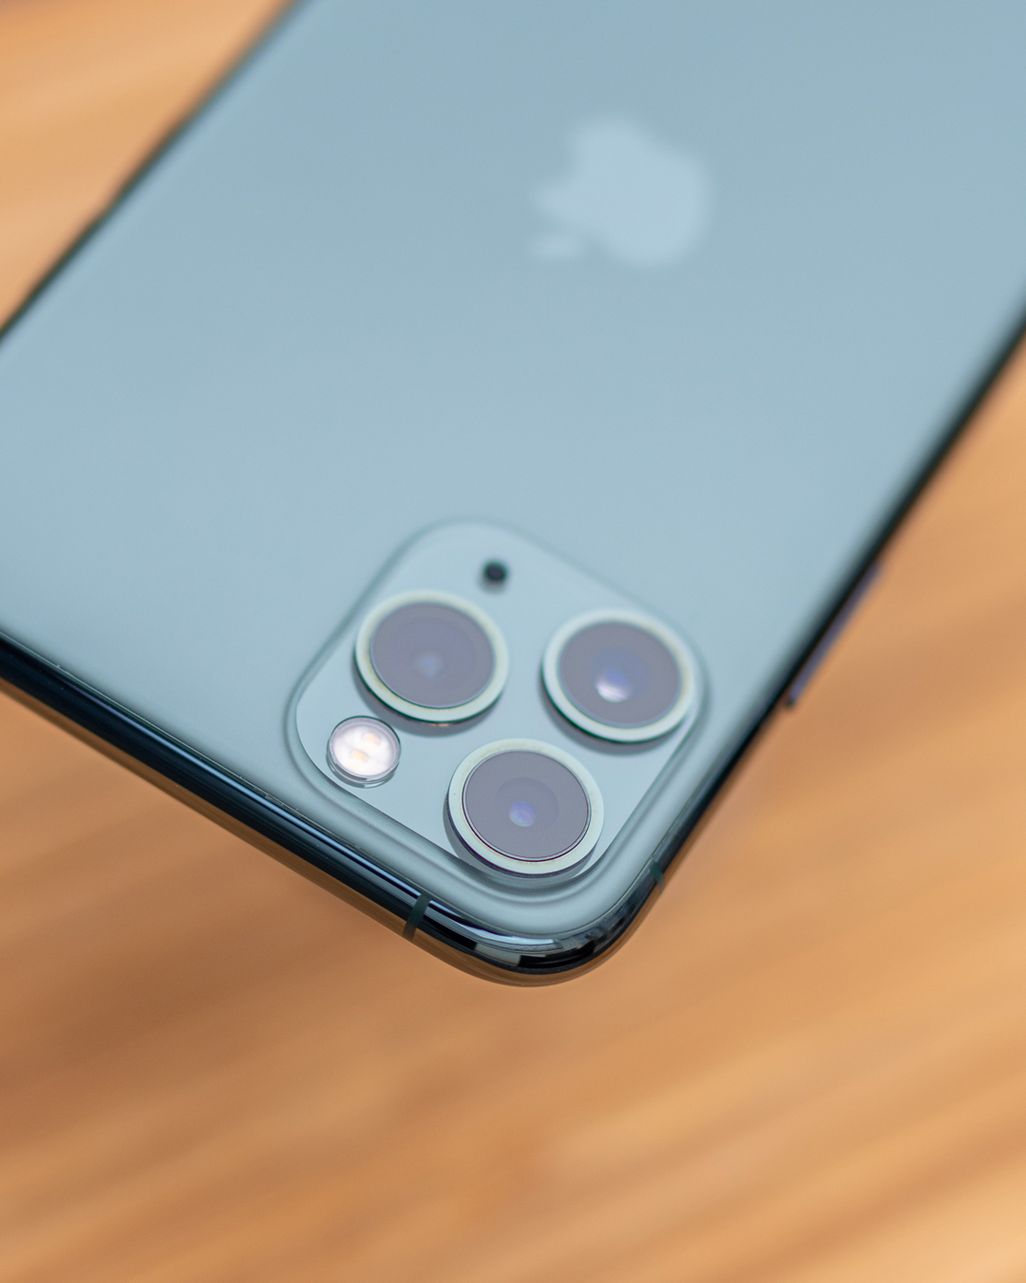 Das herausragende Feature des „iPhone 11 Pro“ und größtes Unterscheidungsmerkmal zum „iPhone 11“ ist ohne Zweifel das neue Kamera-System mit drei 12-Megapixel-Linsen.